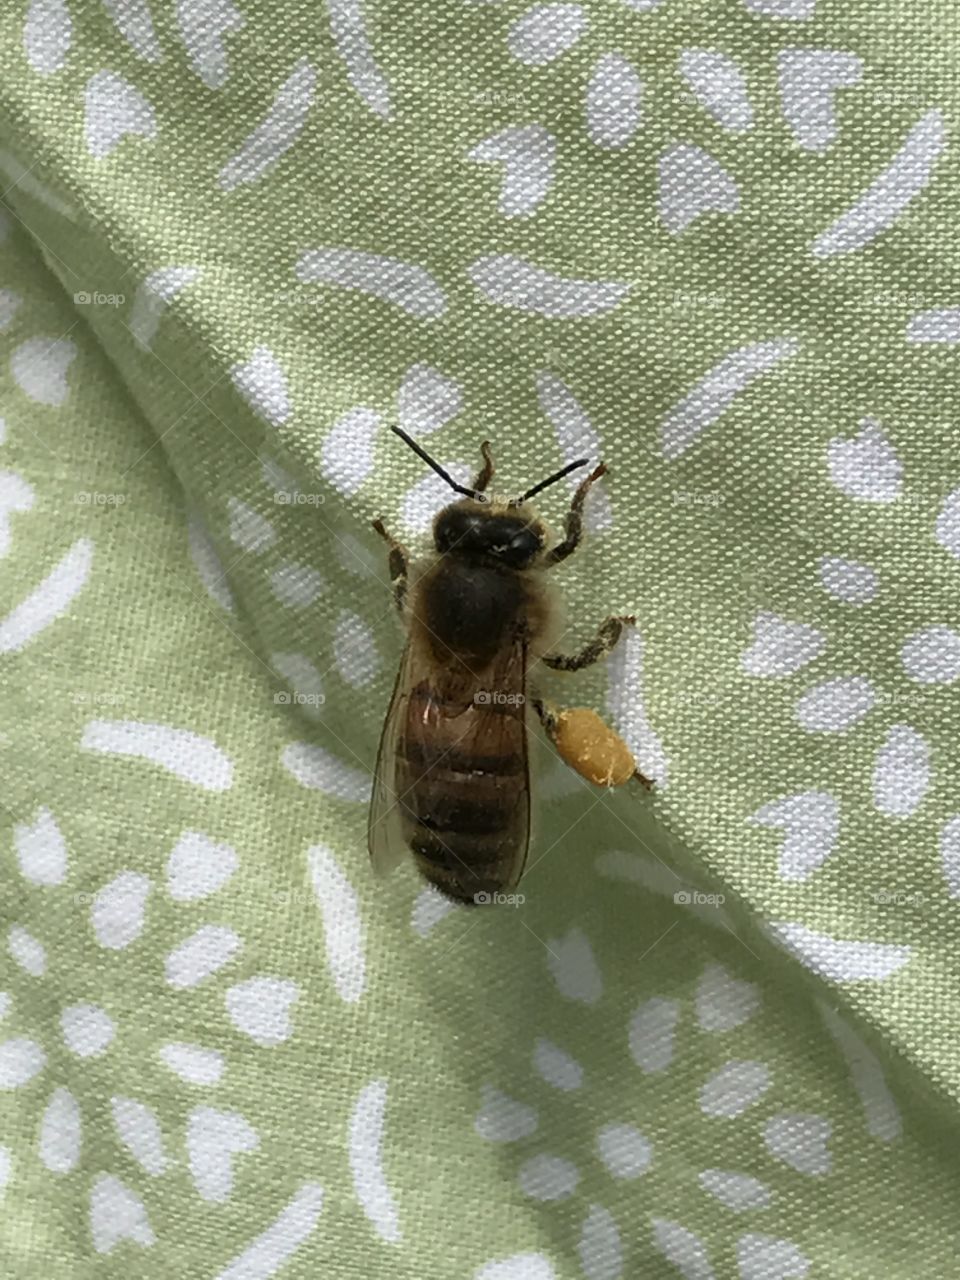 Bee pollen
